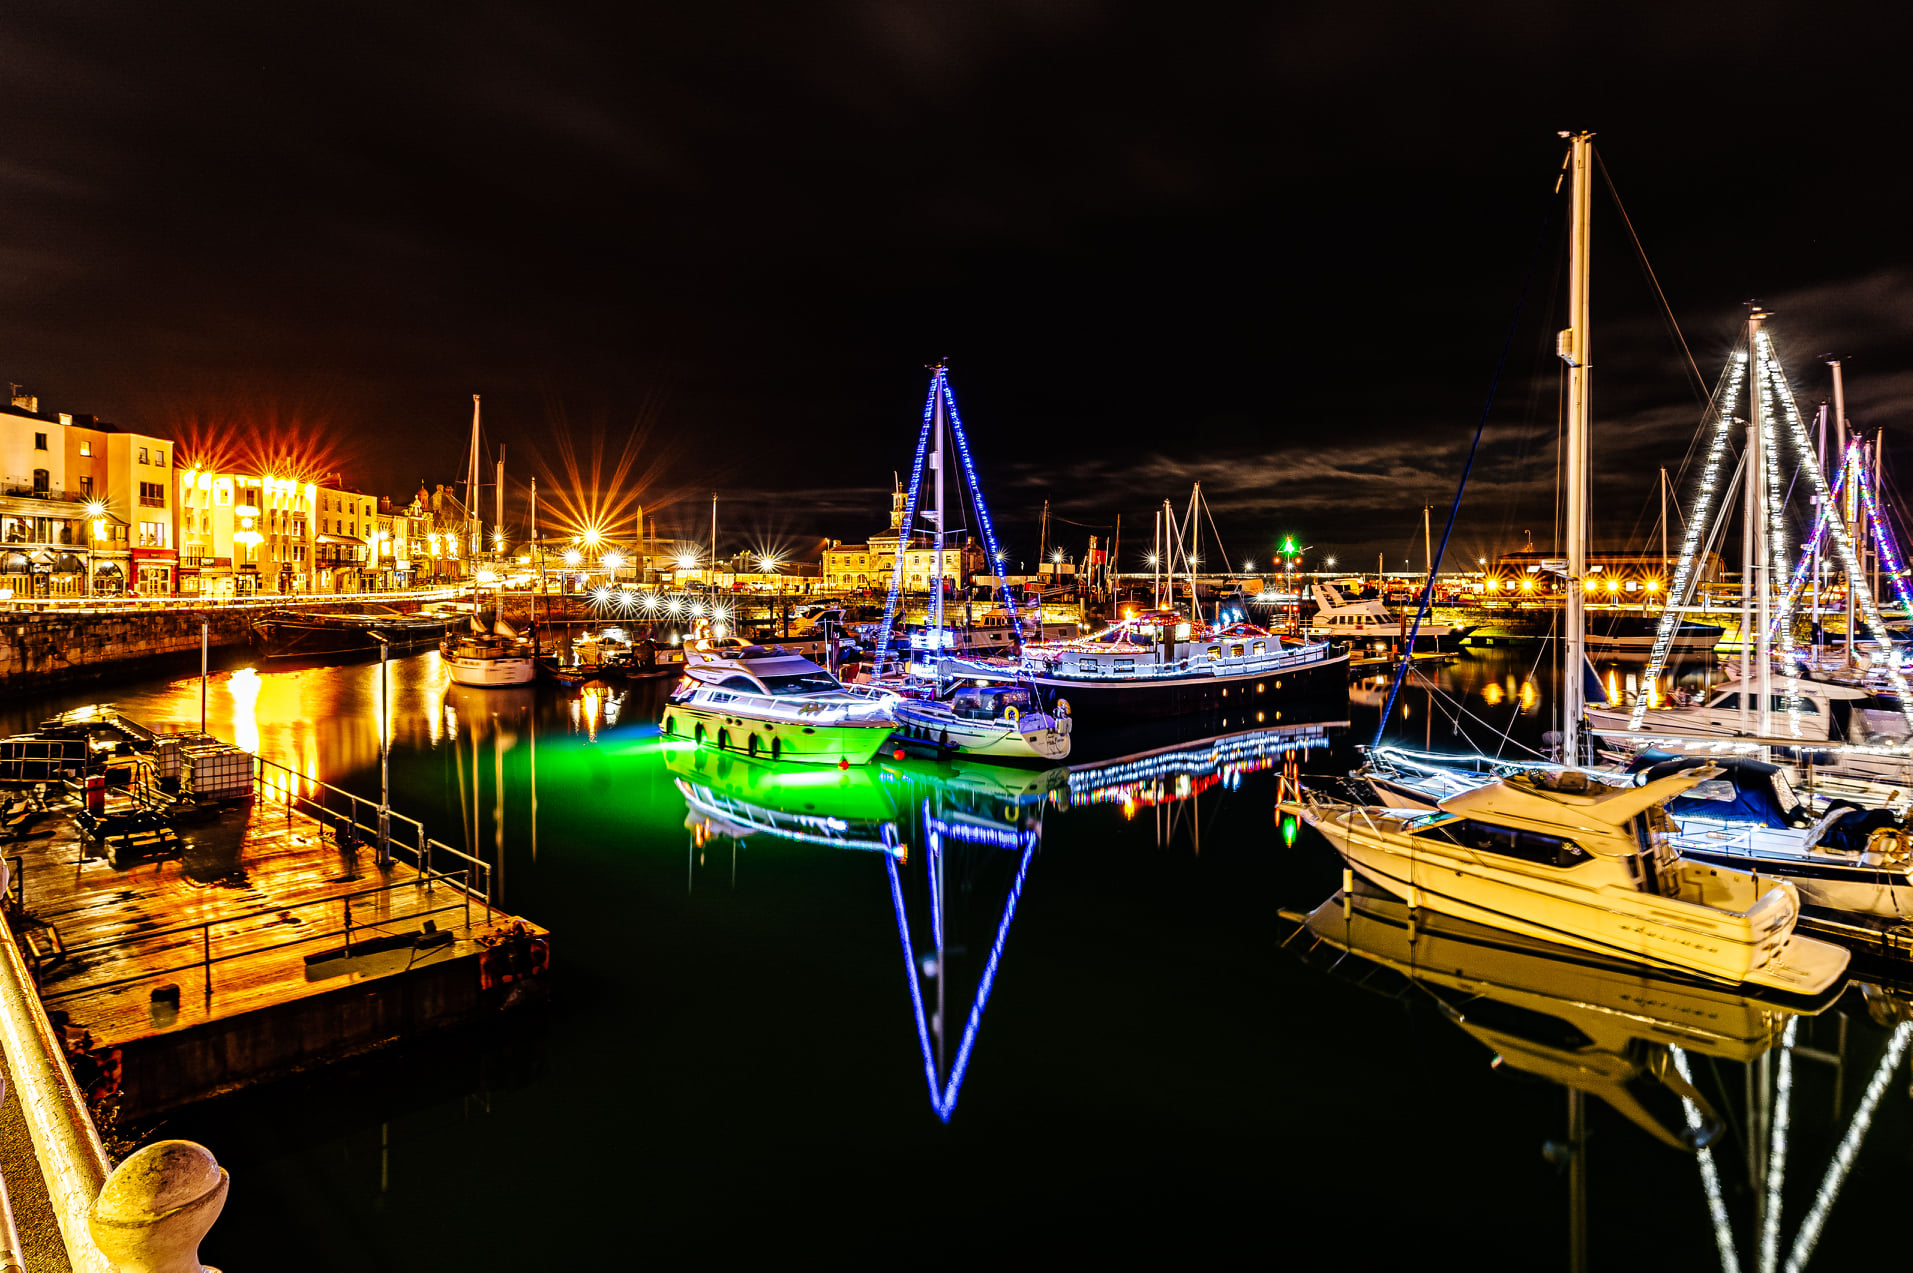 Ramsgate Harbour Christmas lights